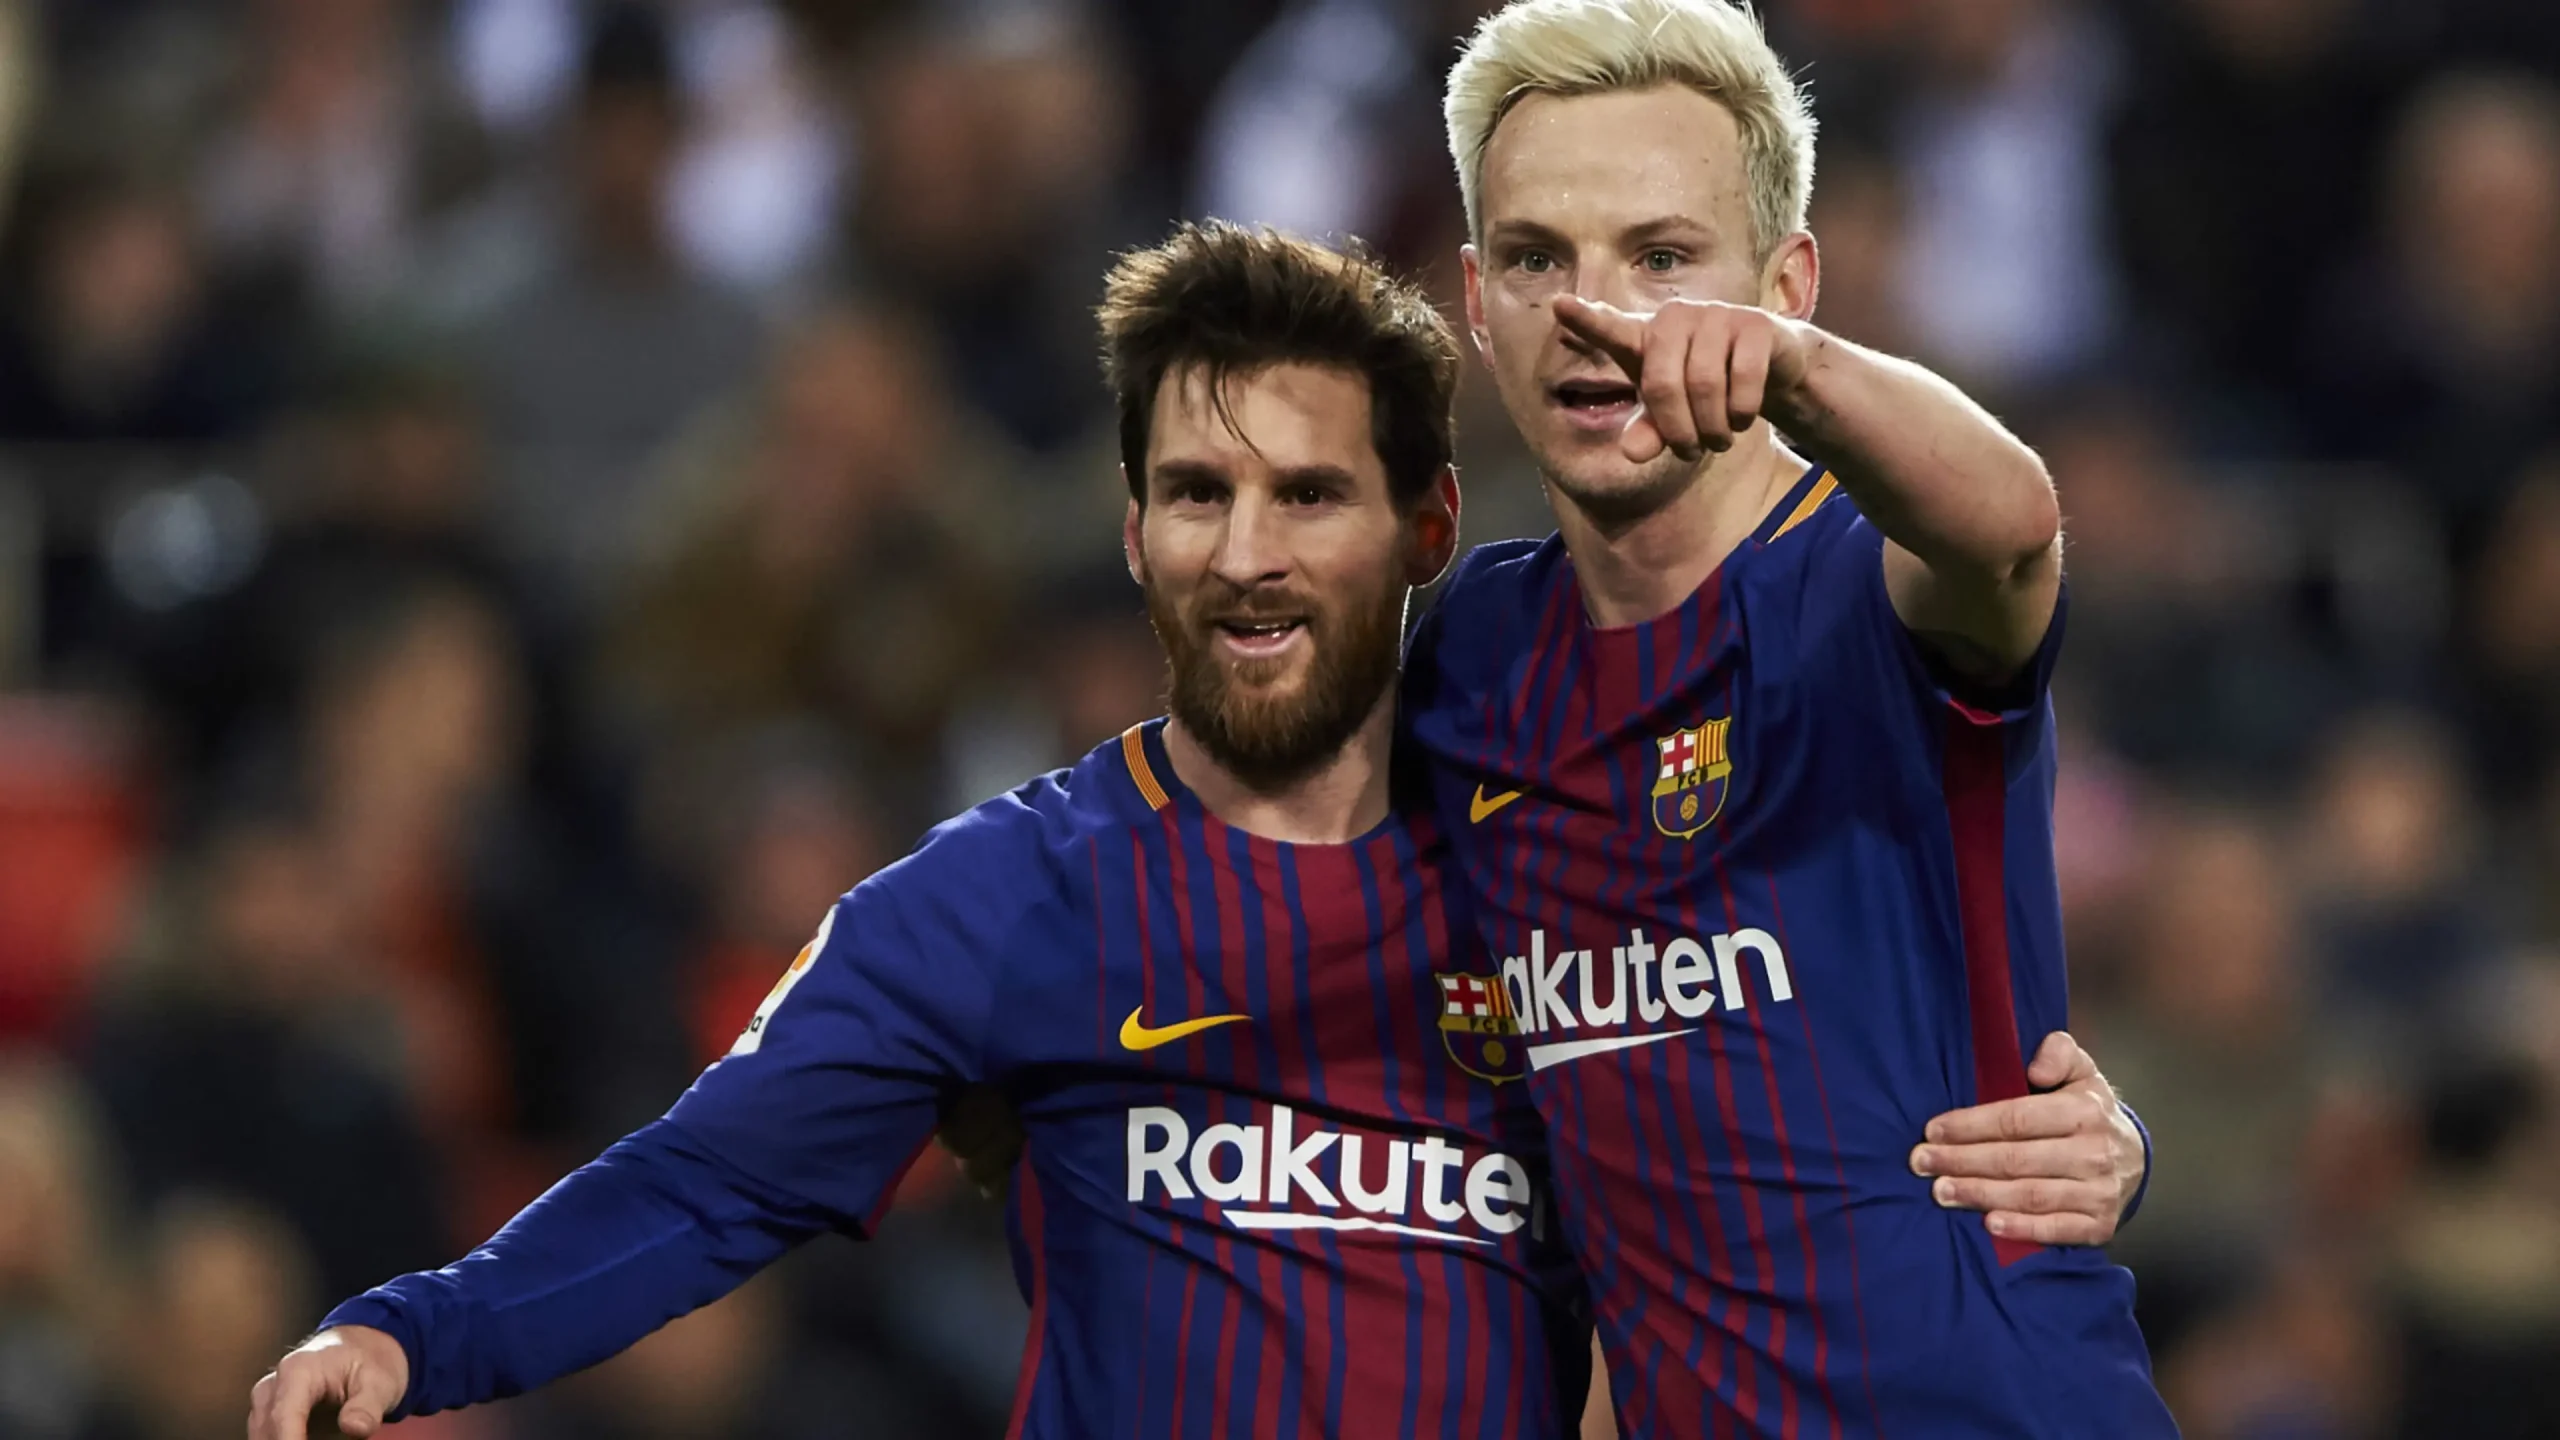 Messi non è il miglior capitano del Barça – Rakitic